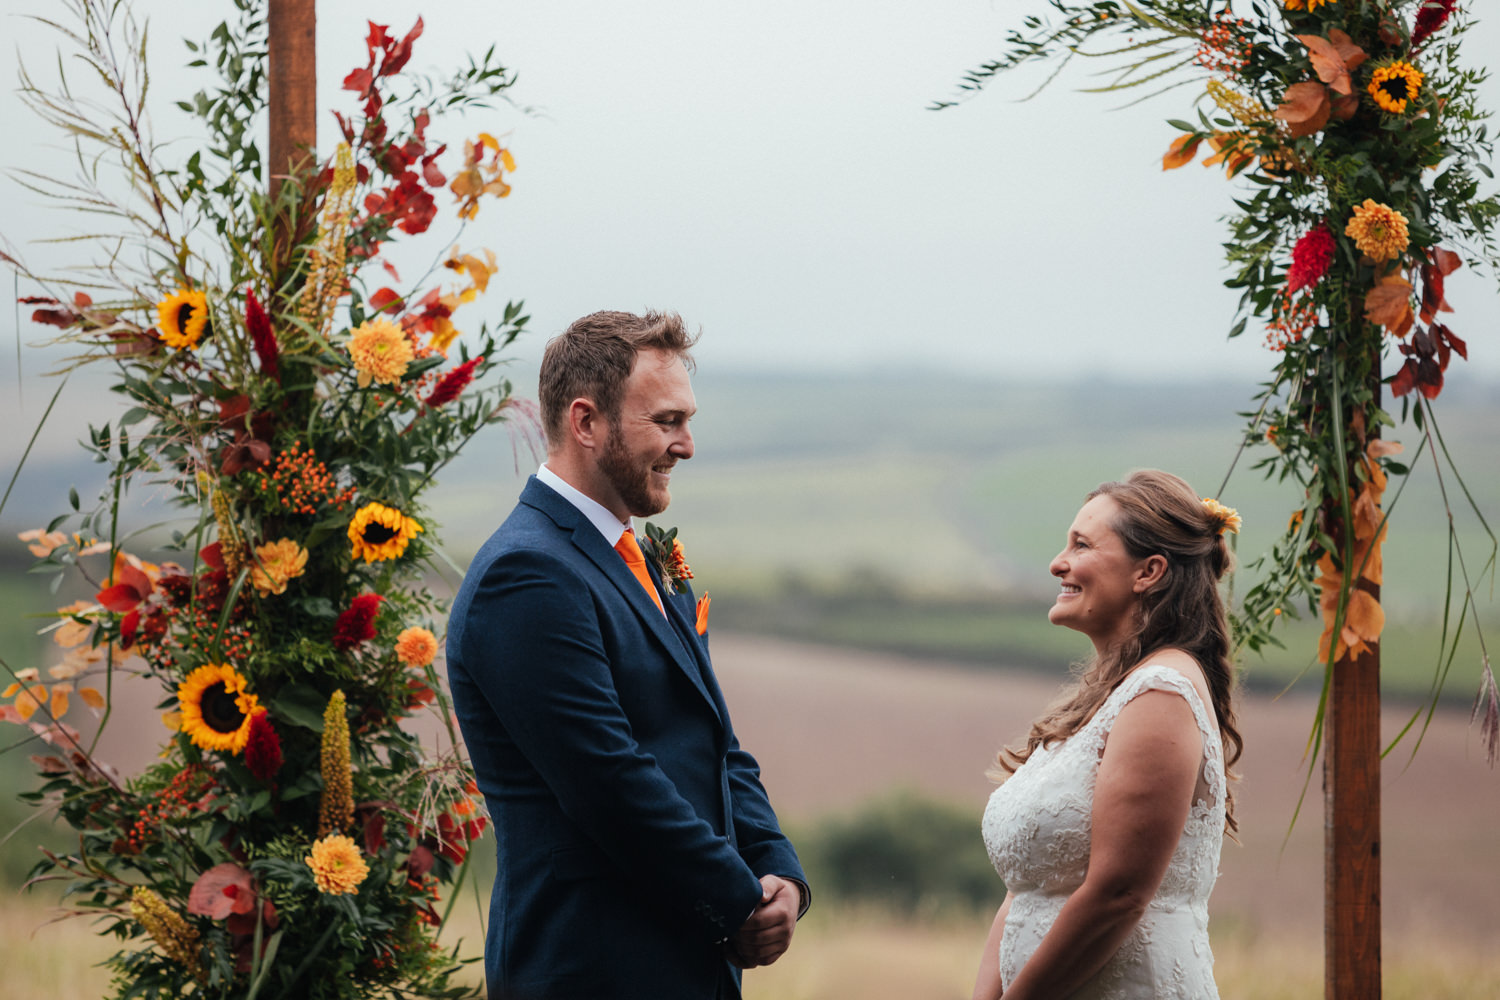 bride and groom, wedding ceremony, wedding arch, sunflowers, wedding flowers, wedding arch, Rock Cornwall Wedding Photography, wedding photographer cornwall